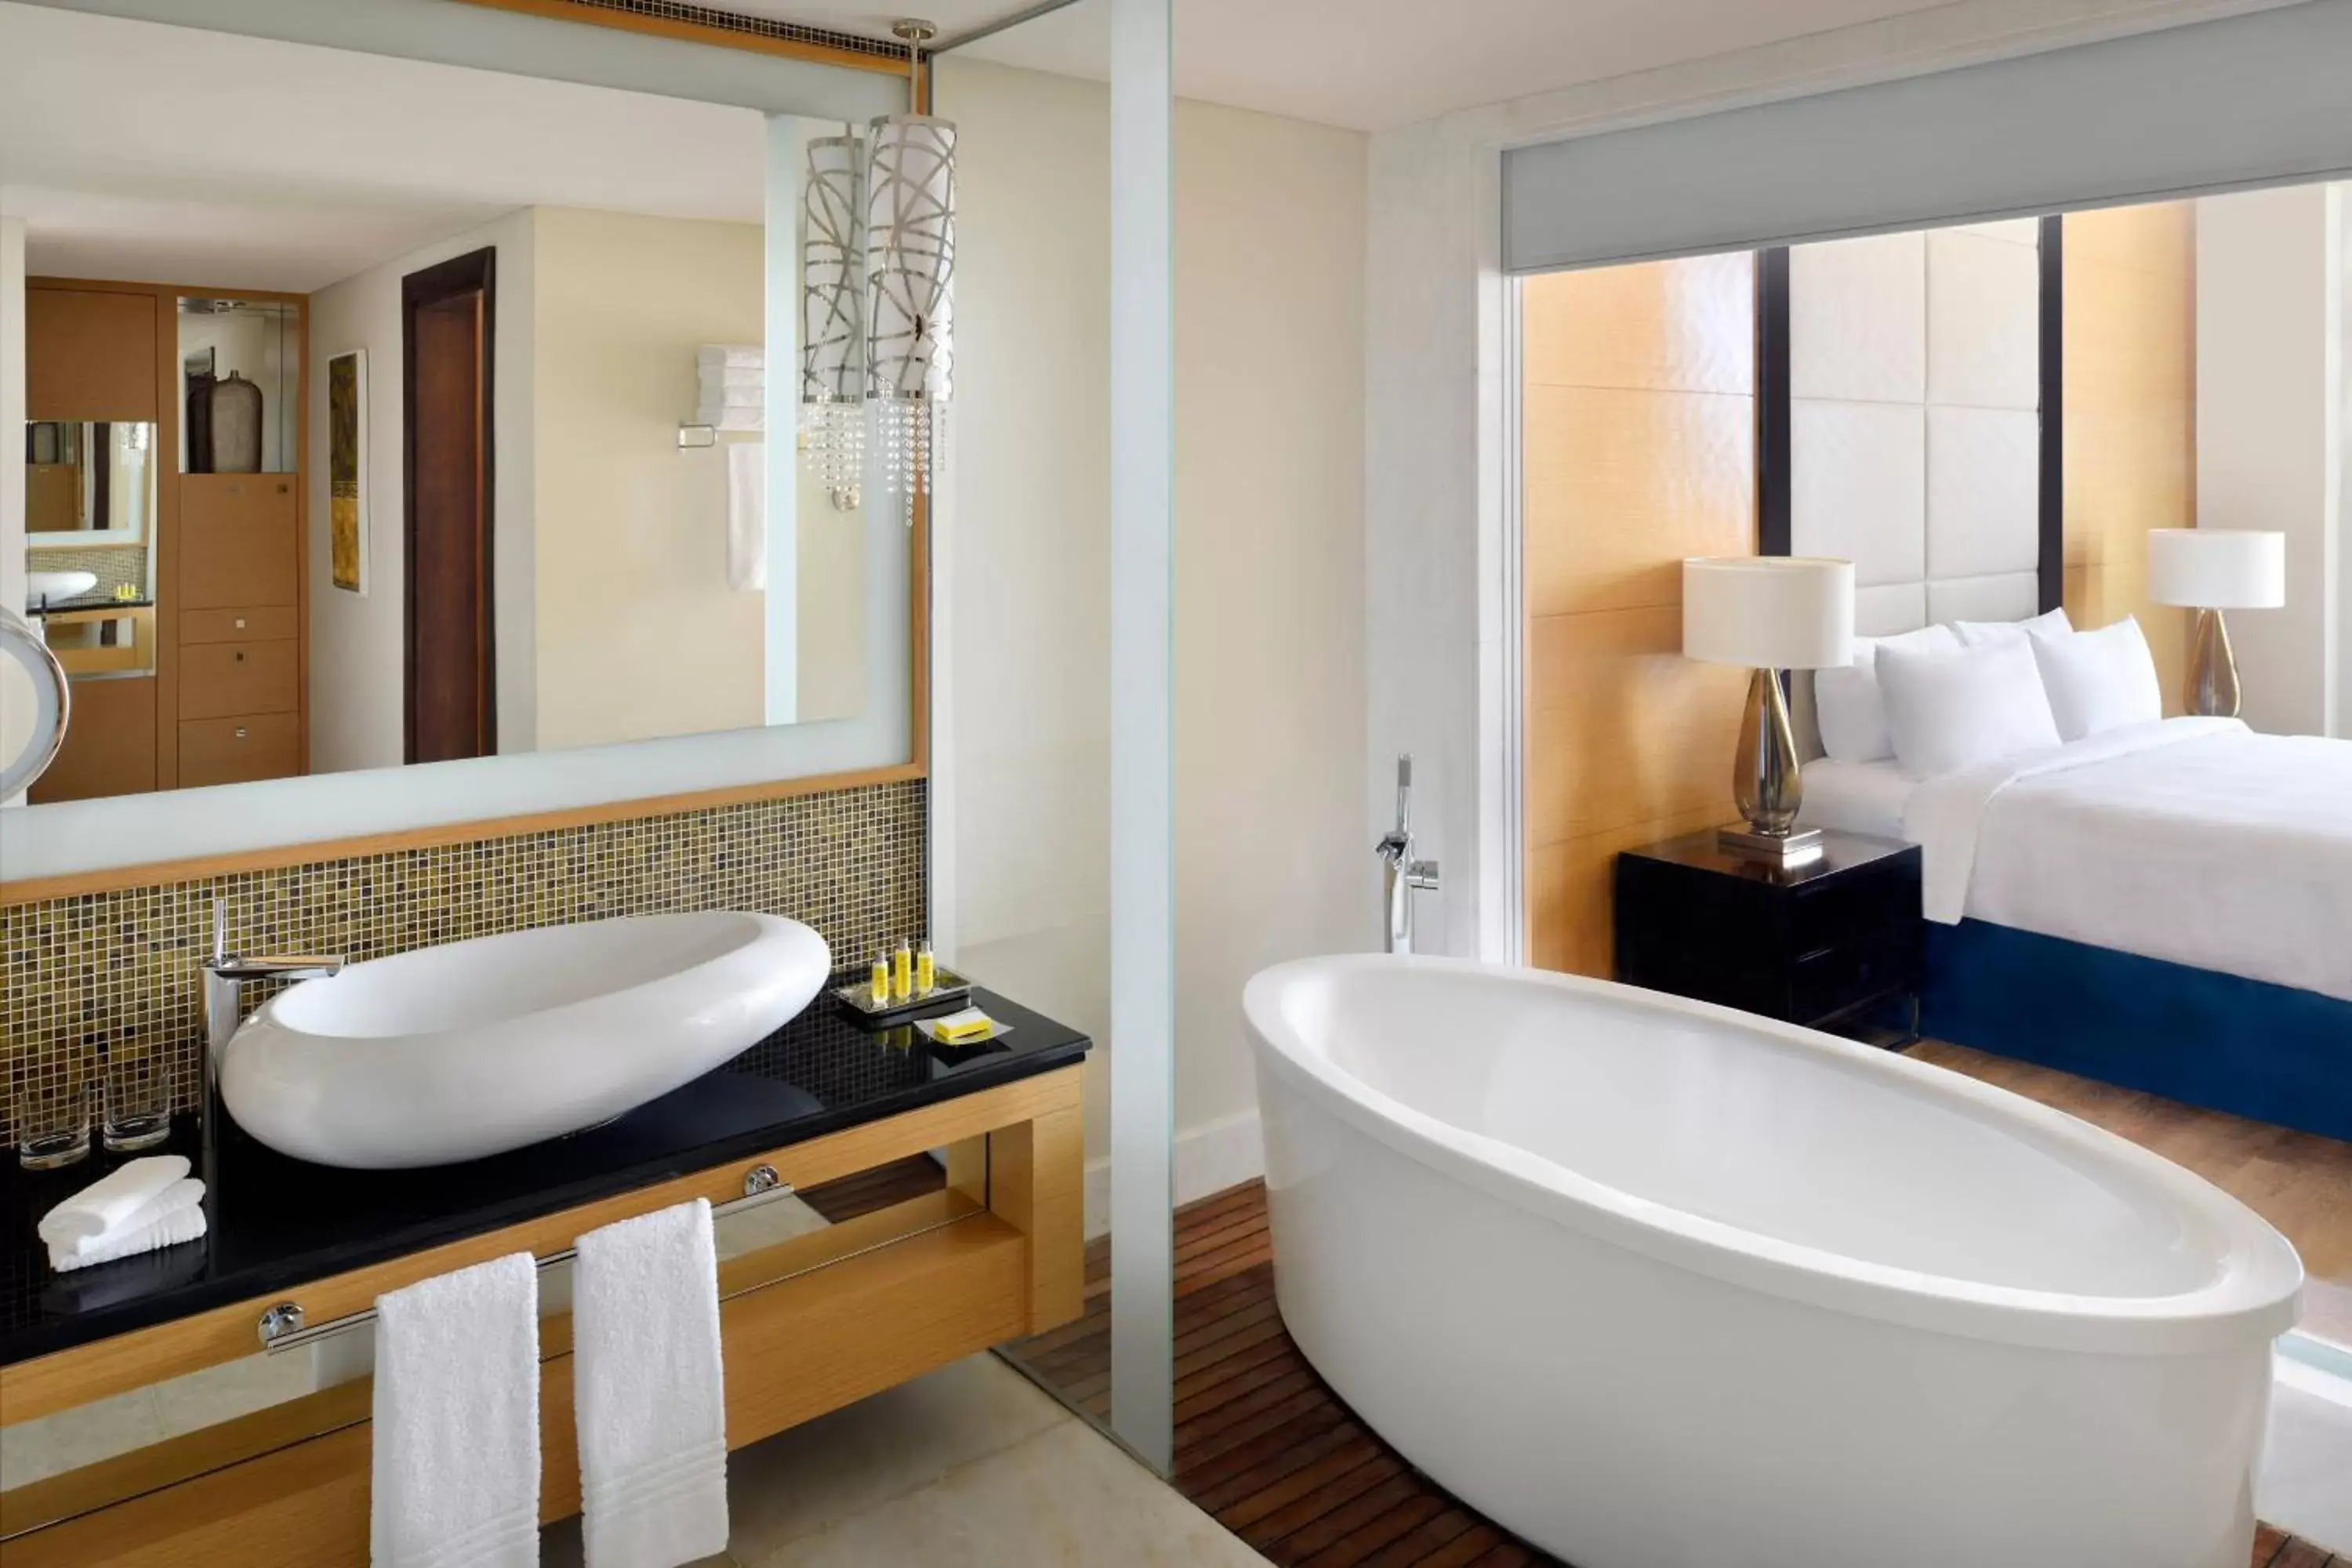 Bedroom, Bathroom in Marriott Hotel, Al Jaddaf, Dubai